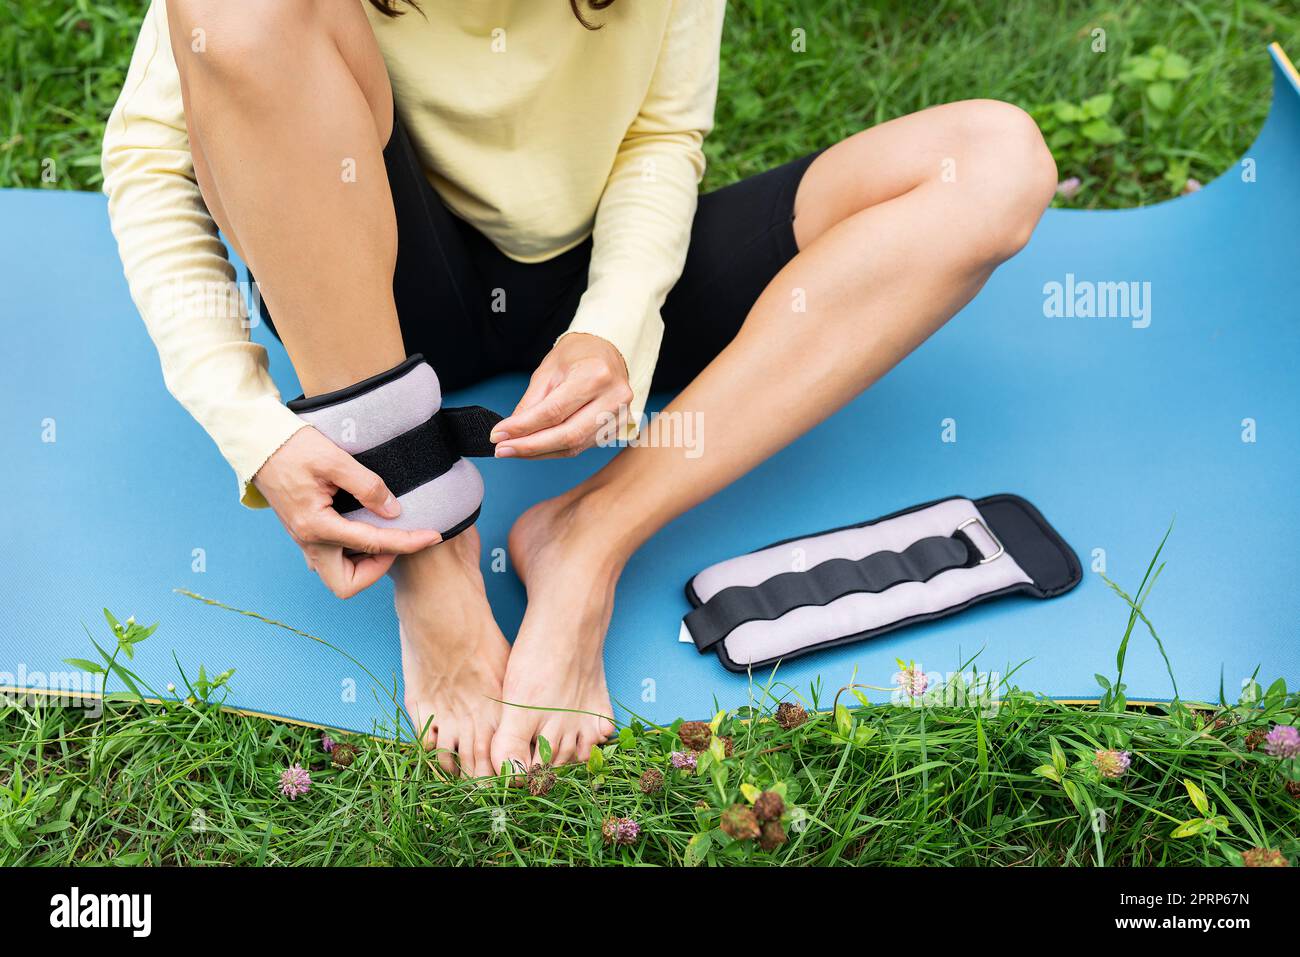 Une fille sportive fait un étirement dans la nature dans l'air frais, la fille pend des poids sur elle-même pour une meilleure étude des exercices. Une femme fait du yoga dans le parc, assise sur l'herbe sur un tapis de yoga. Banque D'Images